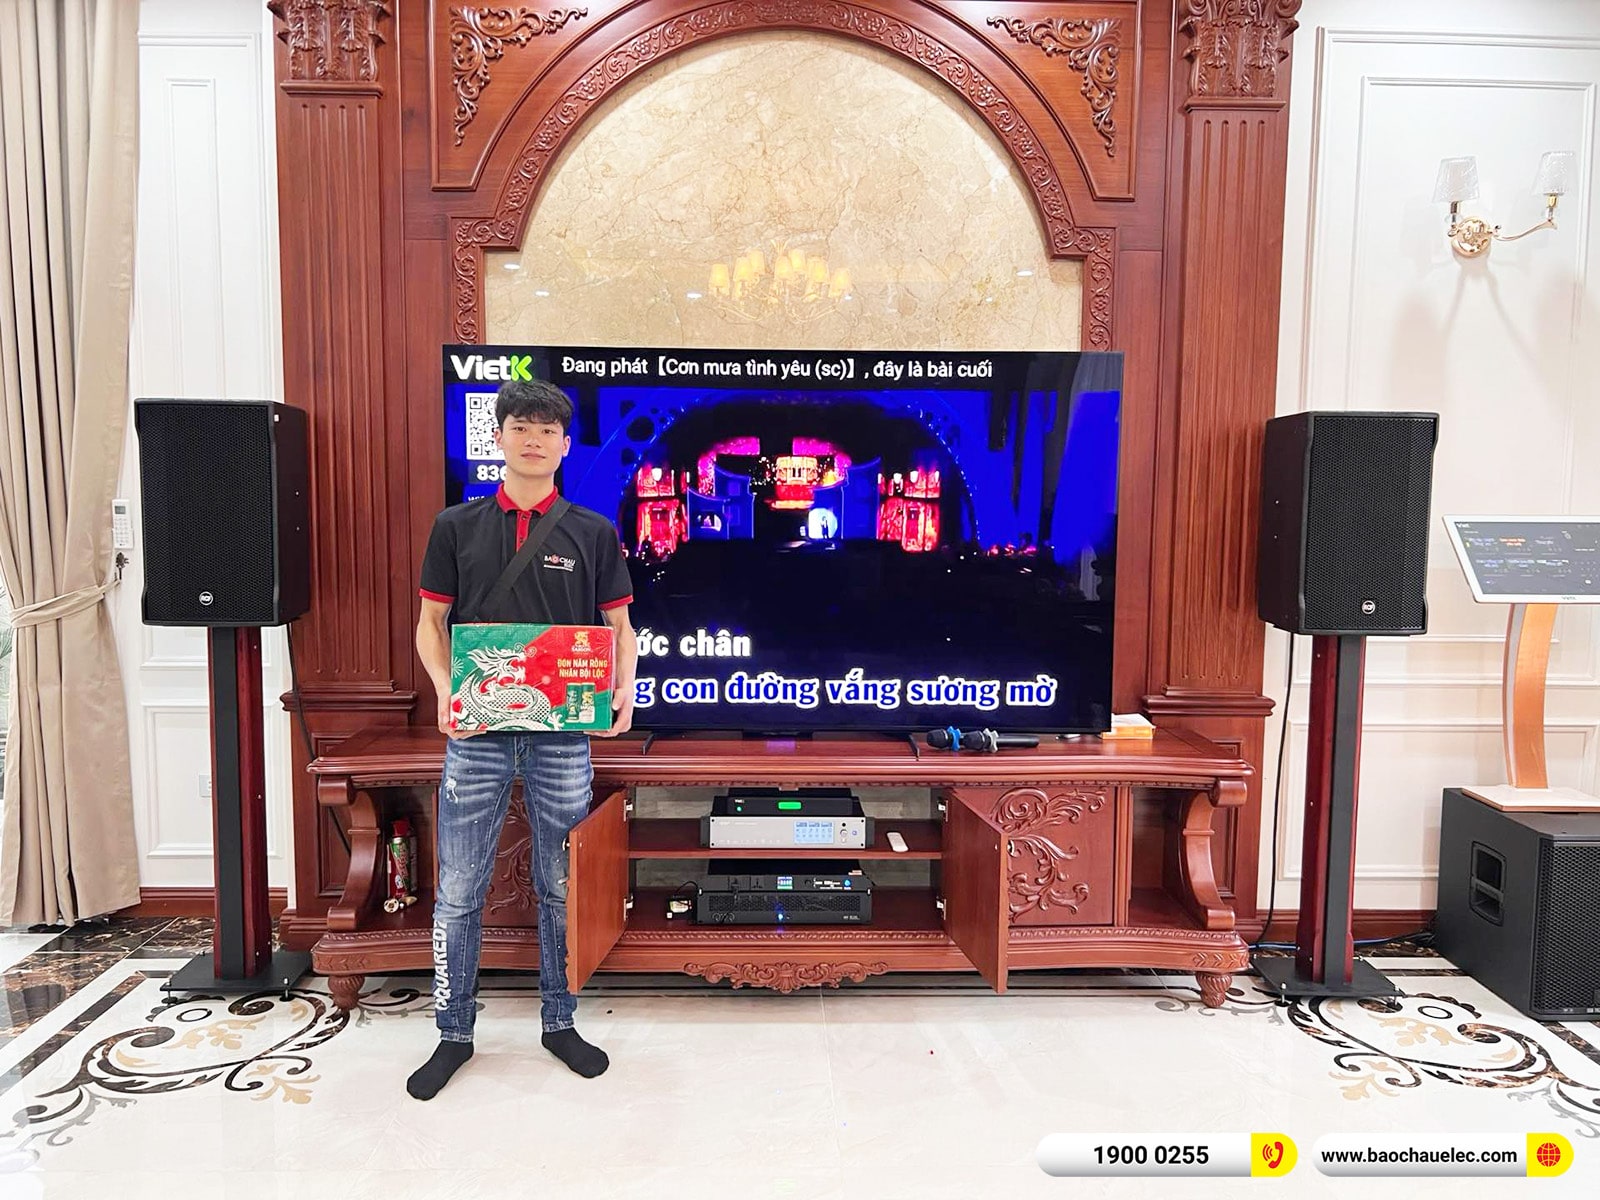 Lắp đặt dàn karaoke RCF khoảng 166tr cho anh Tuấn tại Hà Nội 